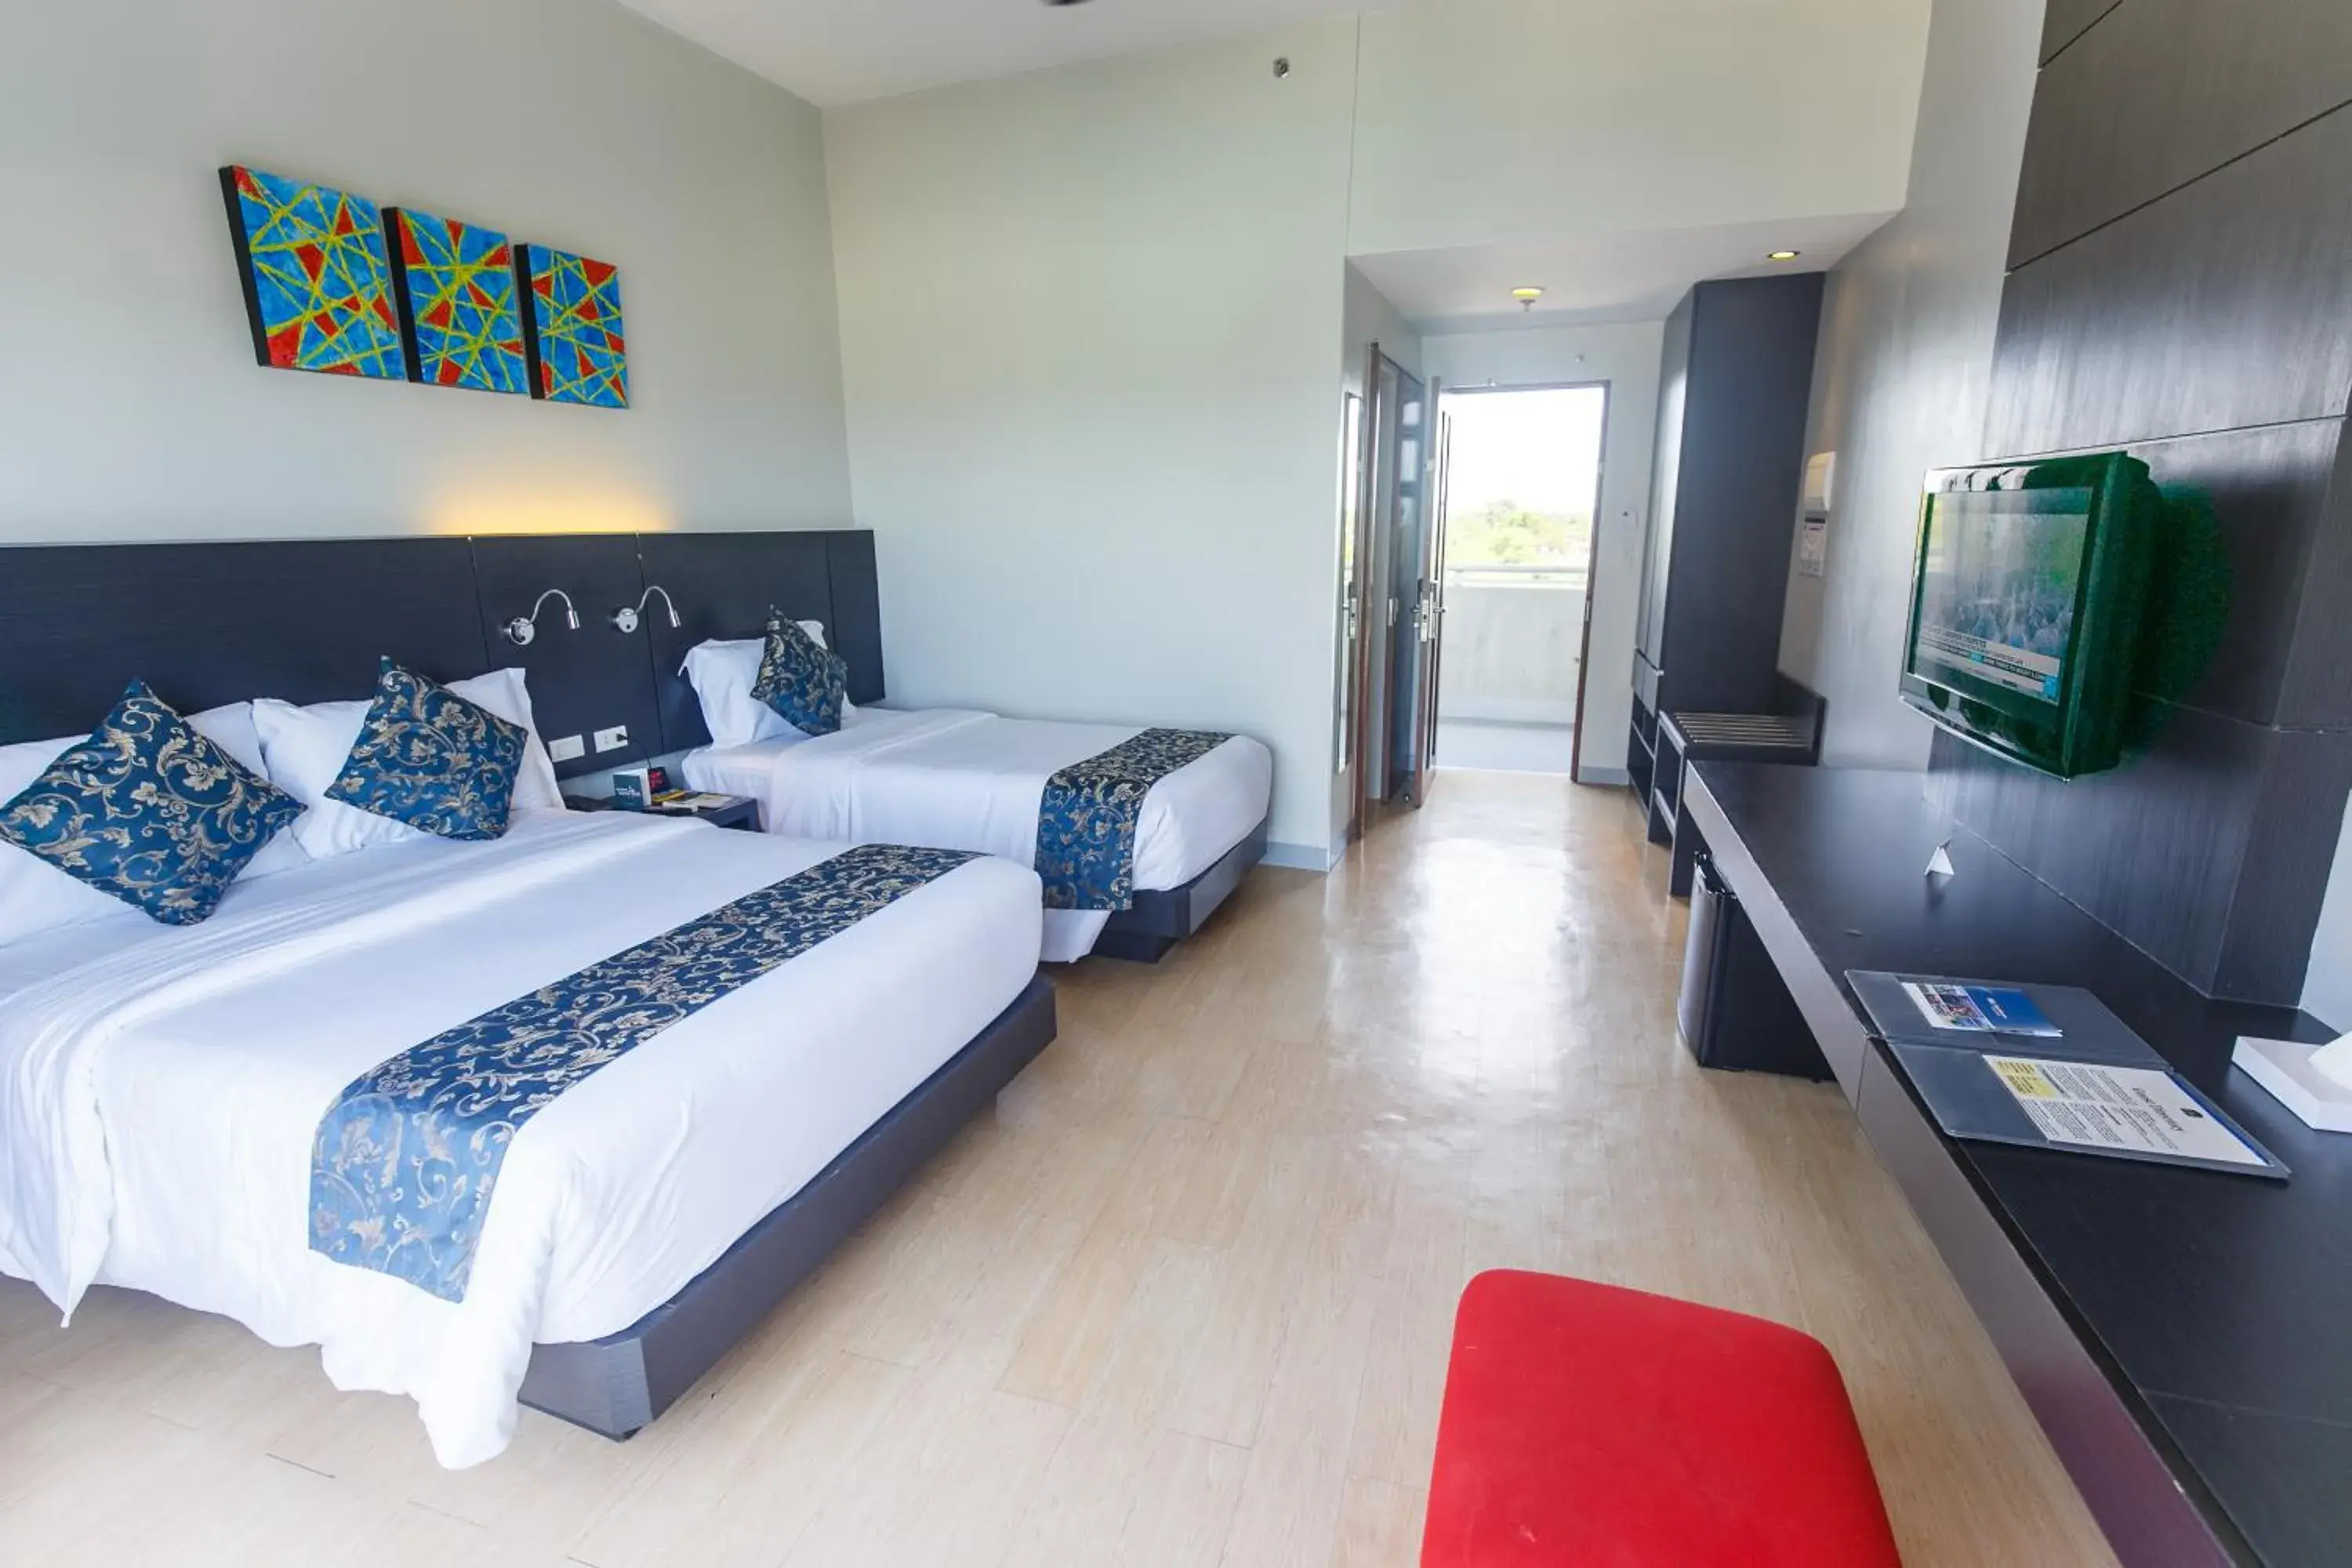 Bed, Room Photo in Solea Seaview Resort